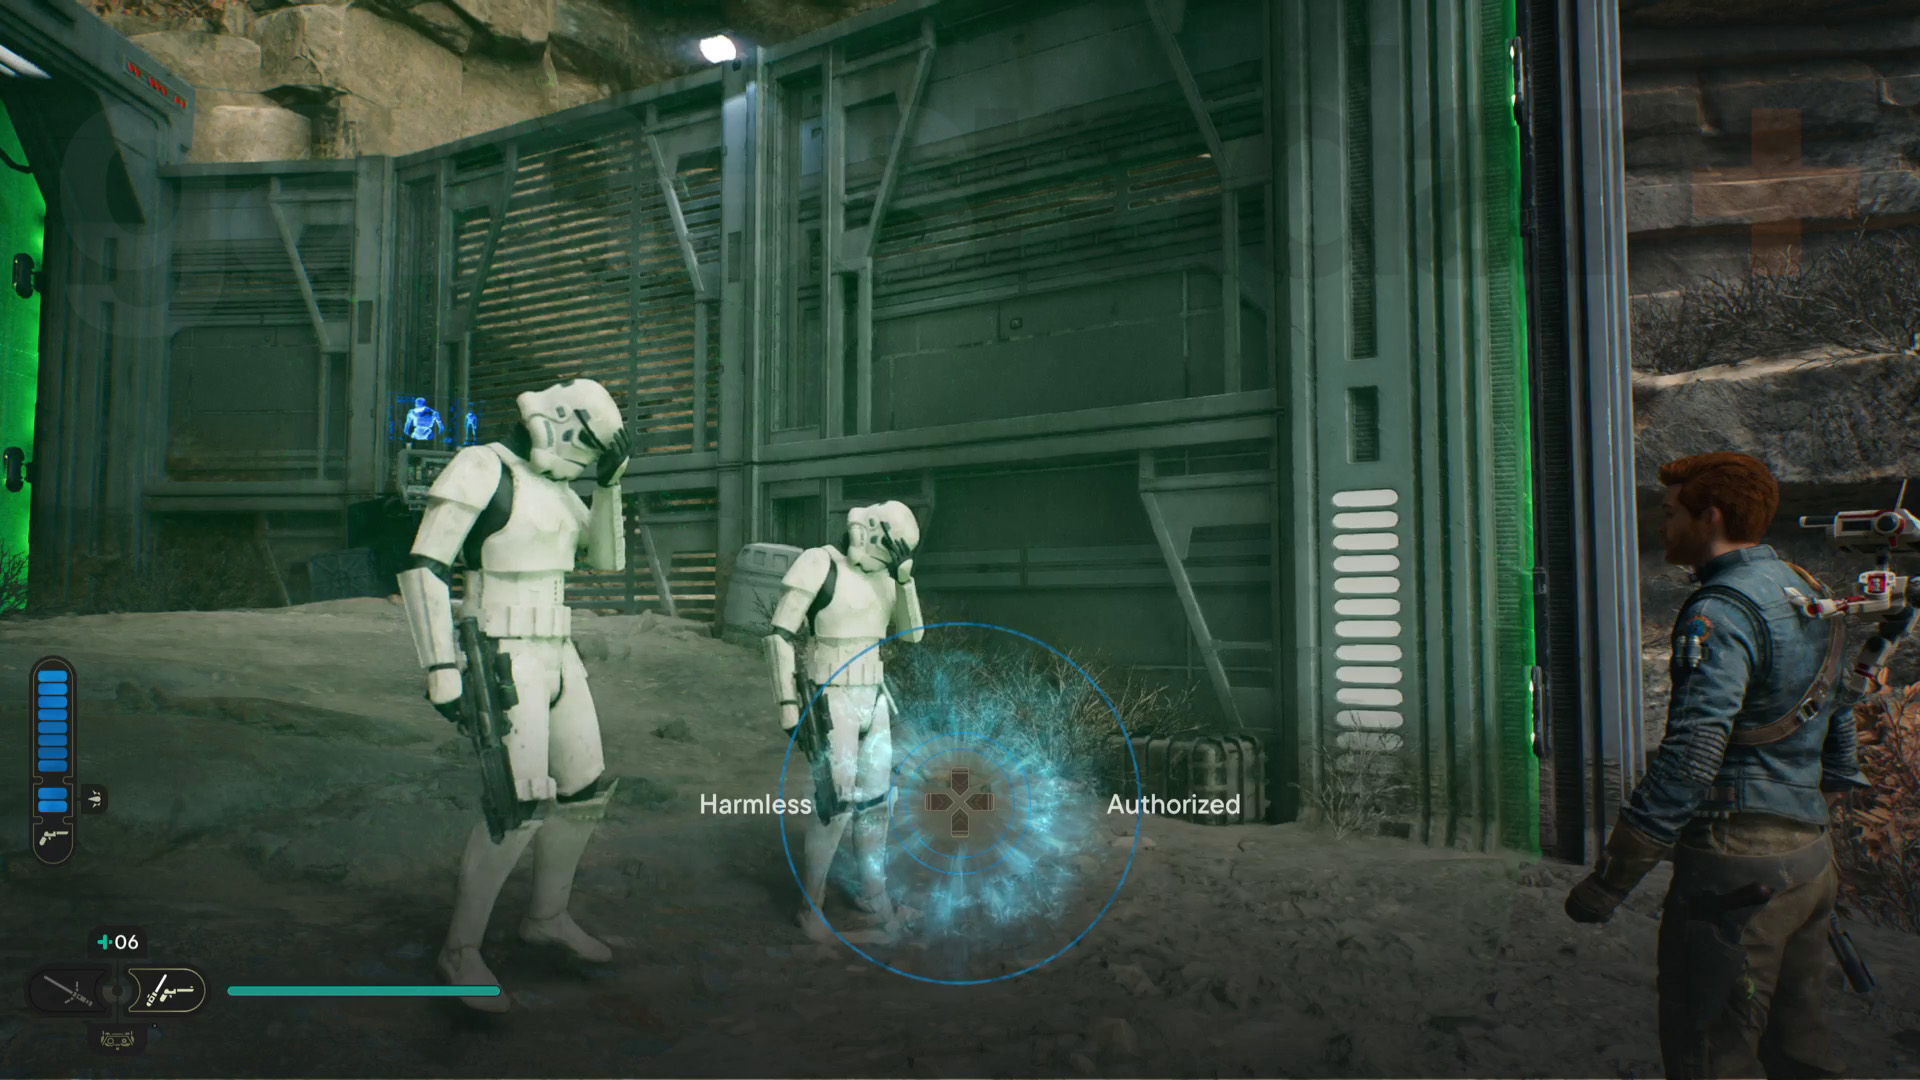 Star Wars Jedi Survivor Koboh walkthrough Cal předvádí myšlenkový trik na dva stormtroopery za zelenou laserovou bariérou